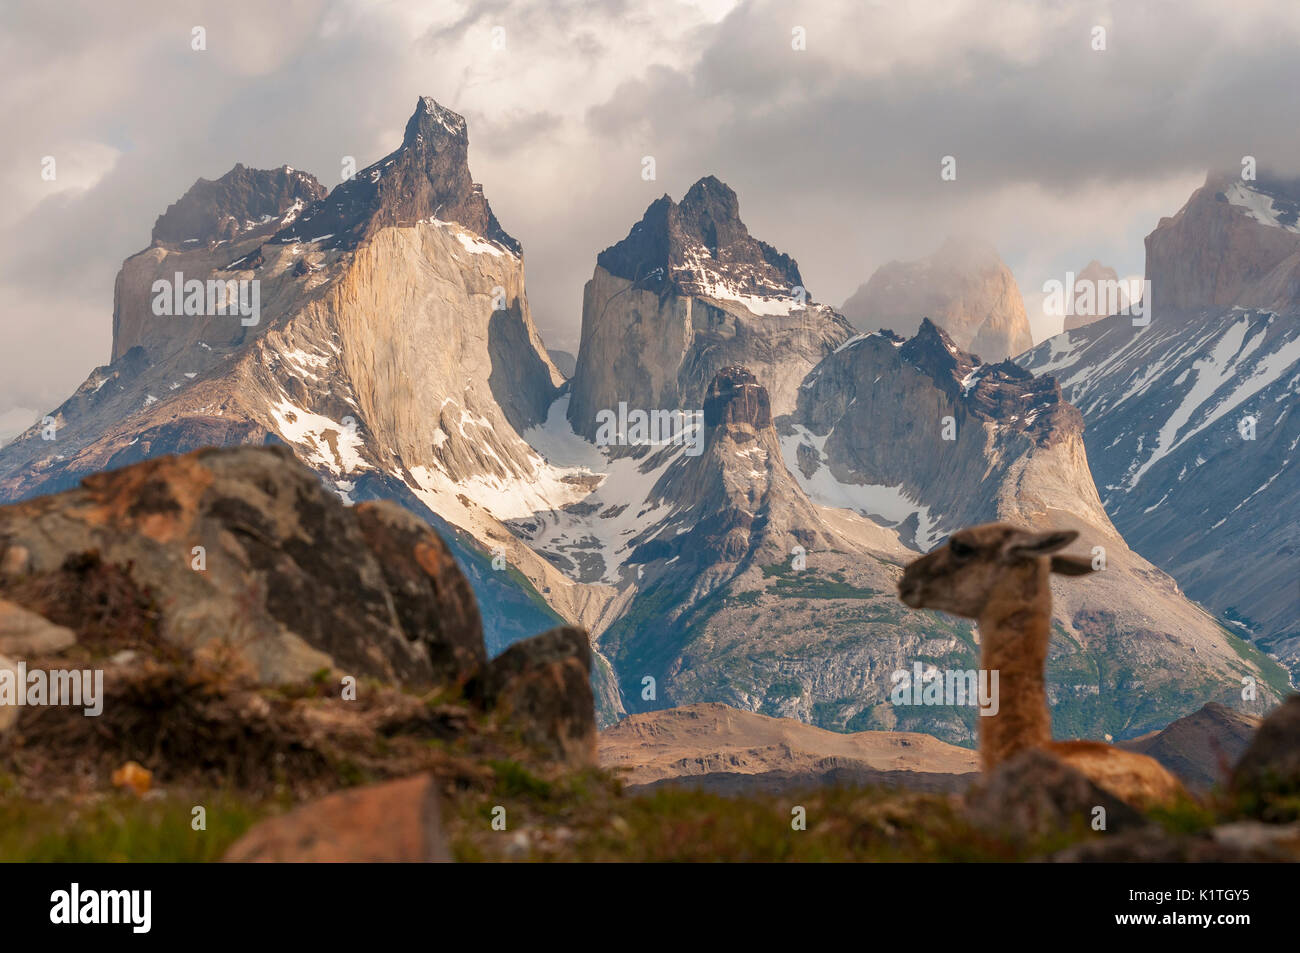 Parco Nazionale di Torres del Paine nella Patagonia cilena. Parque Nacional Torres del Paine en Cile. Región de Magallanes. Foto Stock